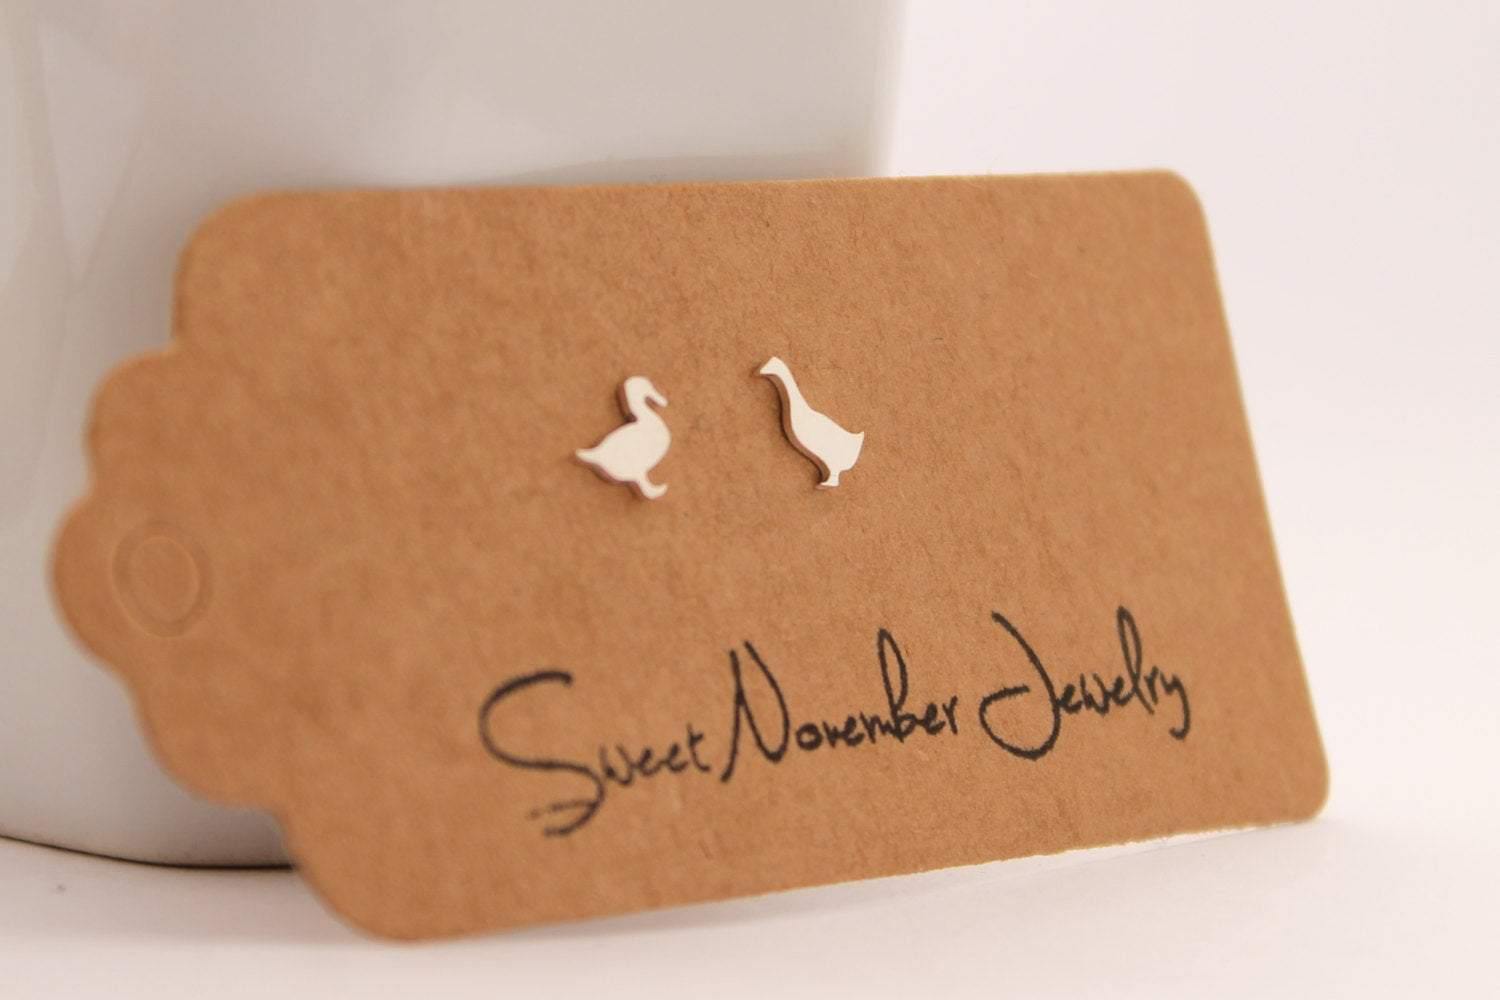 Pair of Mismatch Geese Stud Earrings - Sweet November Jewelry